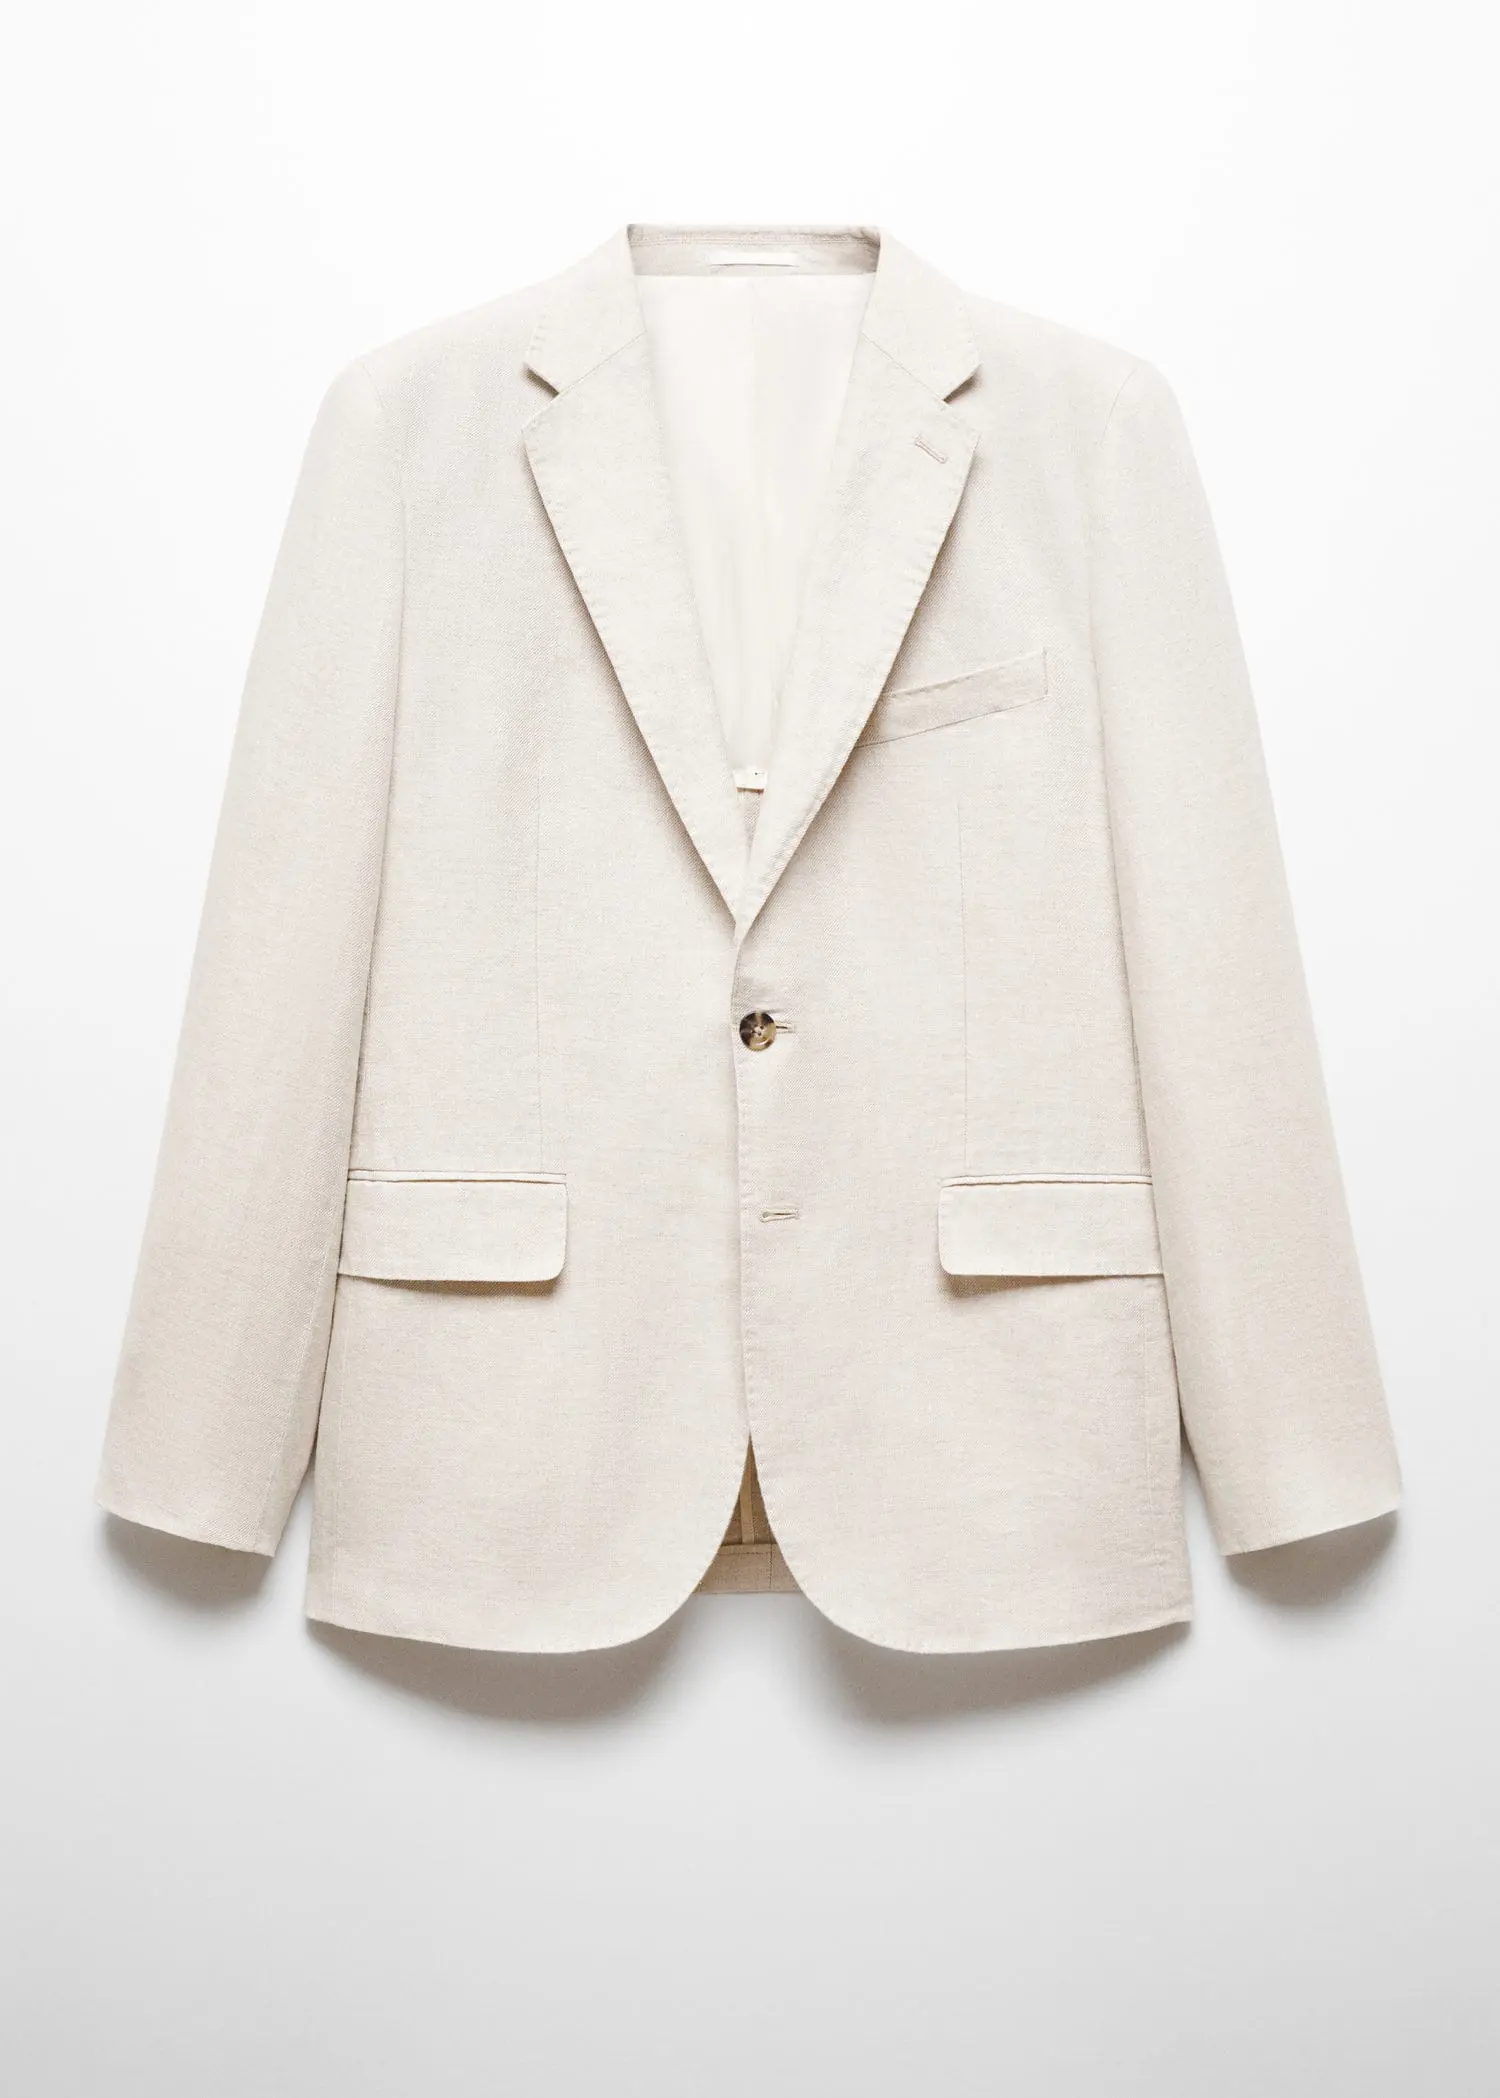 Mango 100% linen slim-fit suit jacket. 1